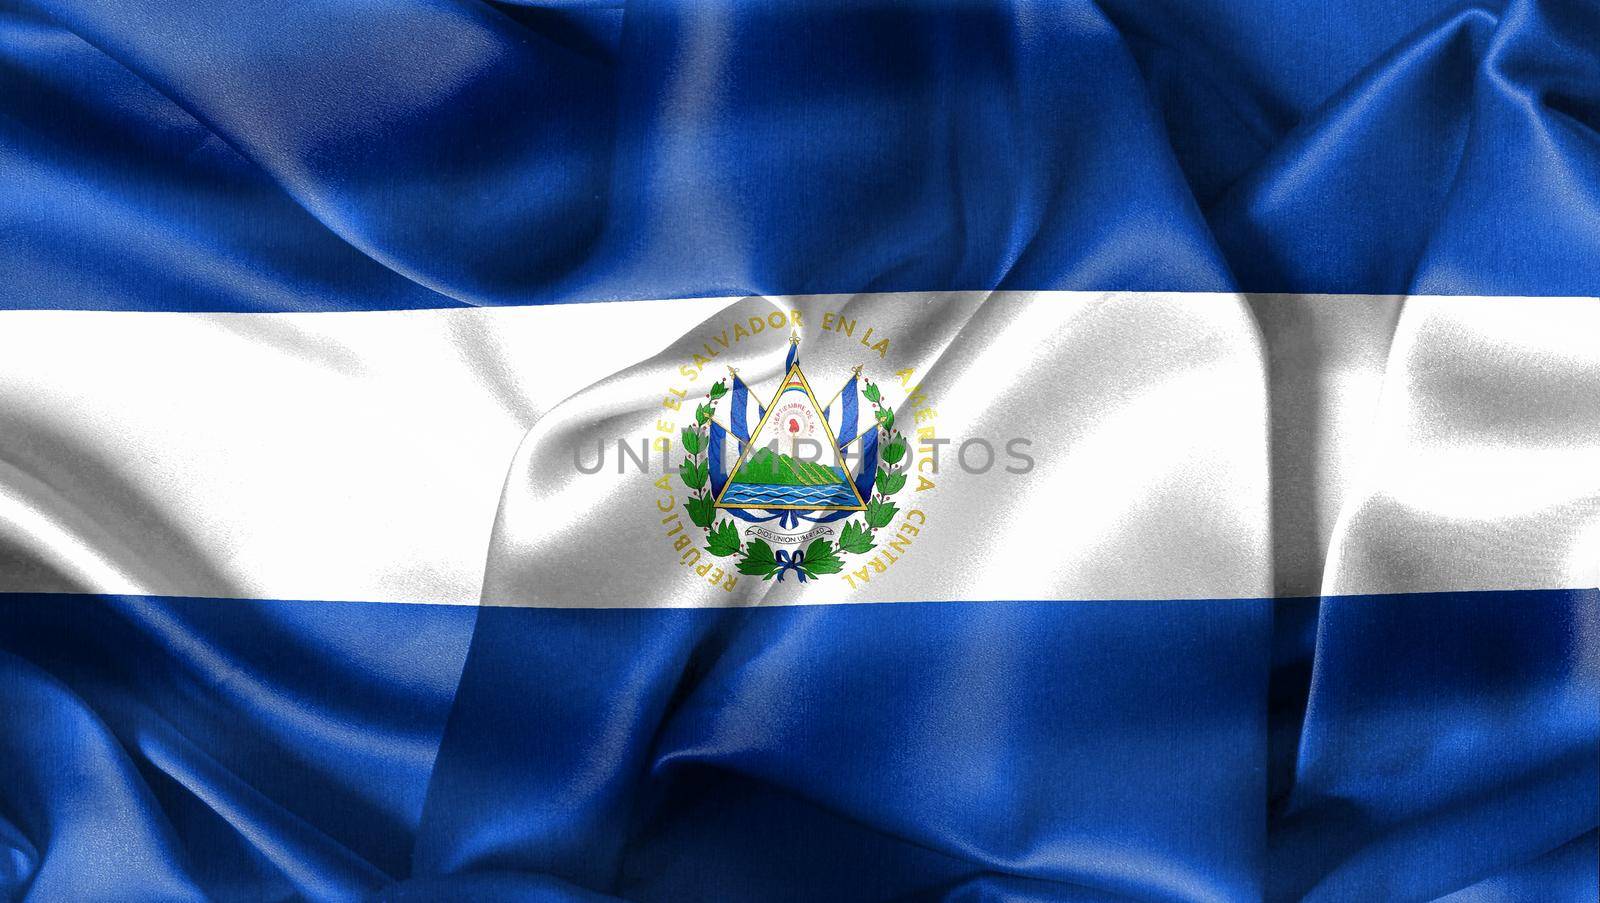 3D-Illustration of a El Salvador flag - realistic waving fabric flag by MP_foto71